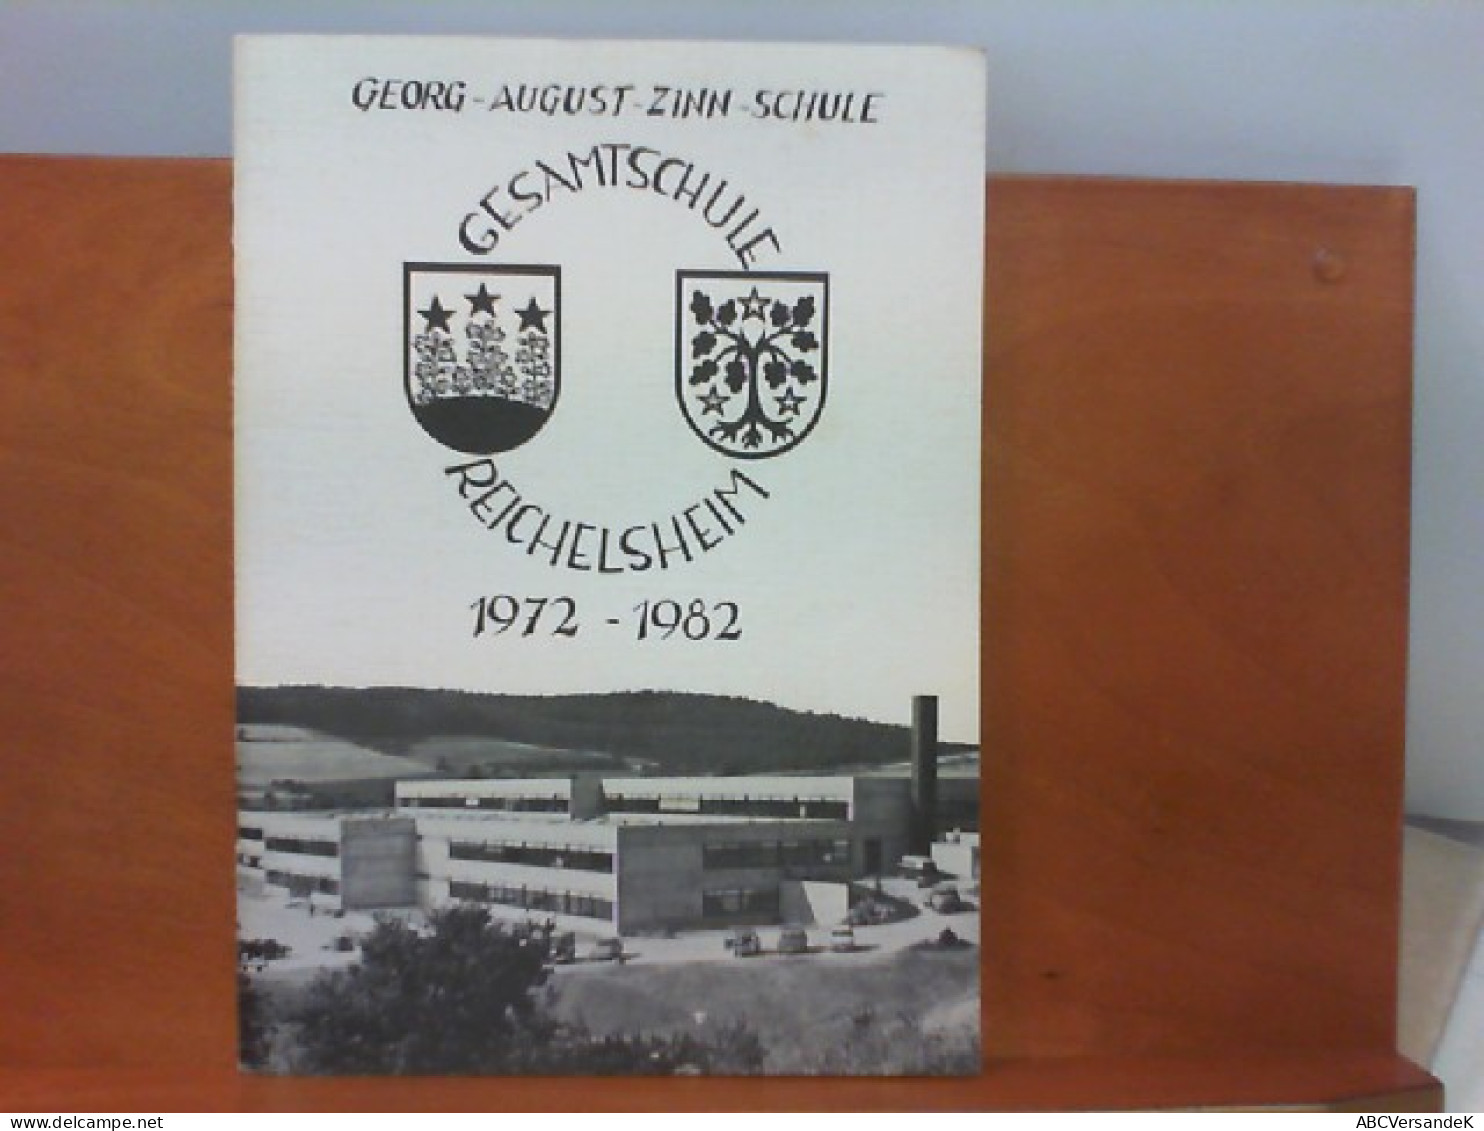 10 Jahre Georg - August - Zinn - Schule 1972 - 1982 - Germany (general)